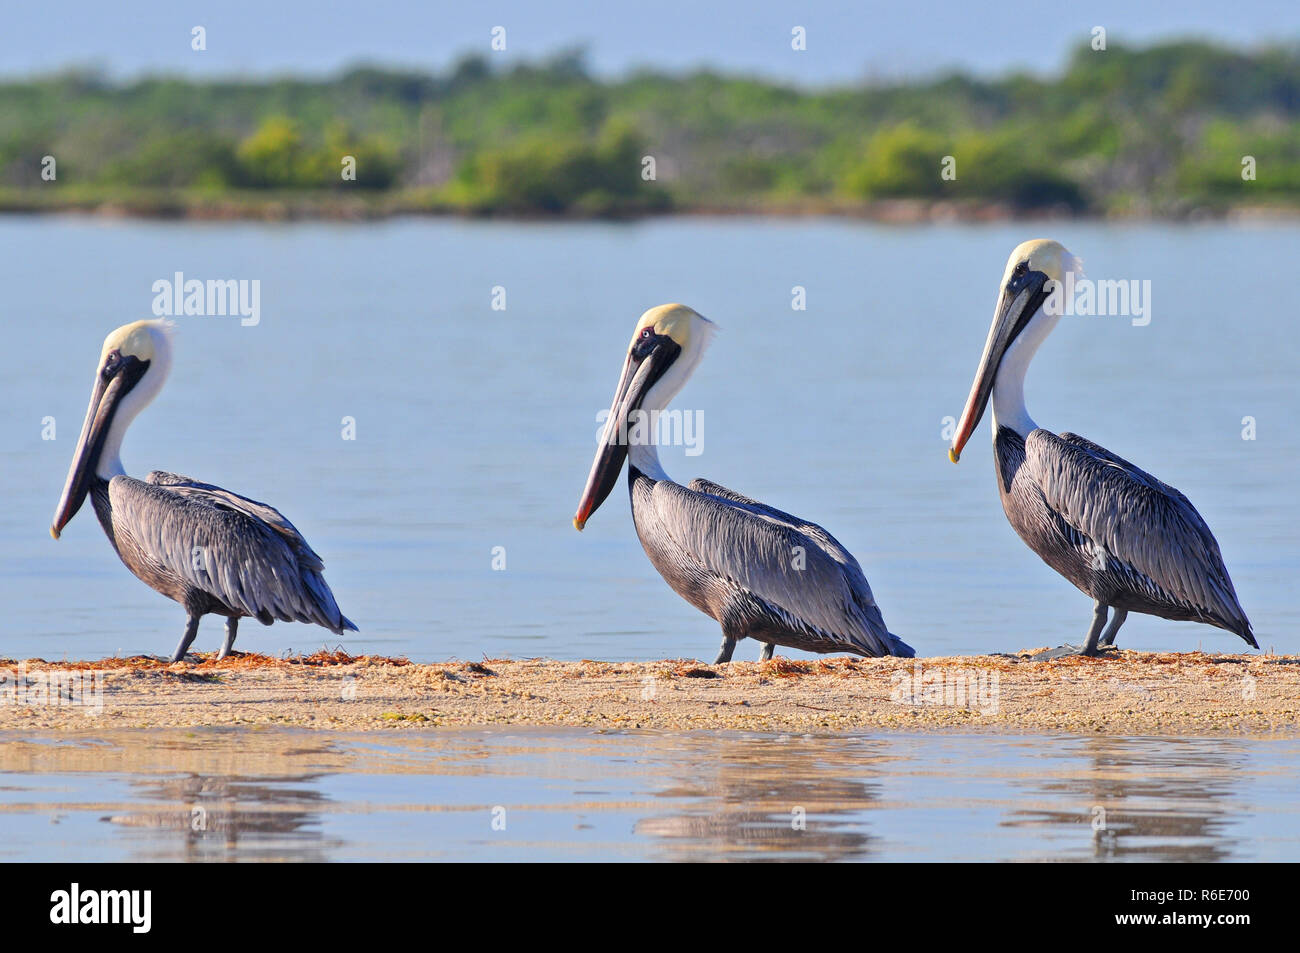 A Row Of Brown Pelicans In The Rio Lagartos Natural Reserve, Mexico Stock Photo